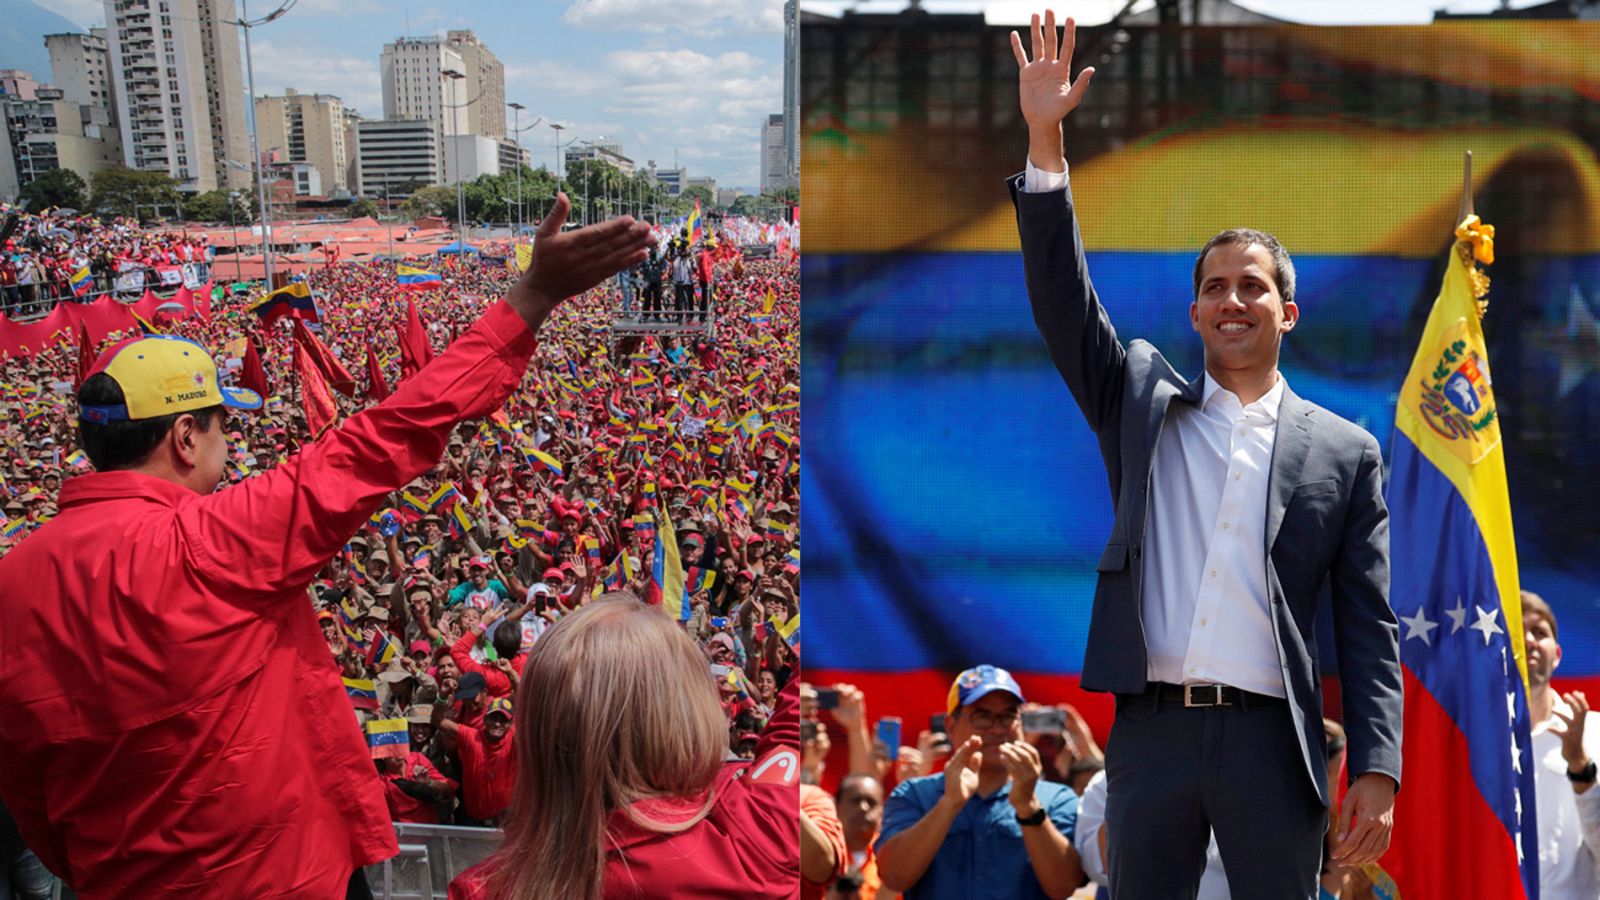 Telediario 1: Manifestaciones multitudinarias en Caracas a favor y en contra de Maduro, cuando se cumplen 20 años de chavismo | RTVE Play